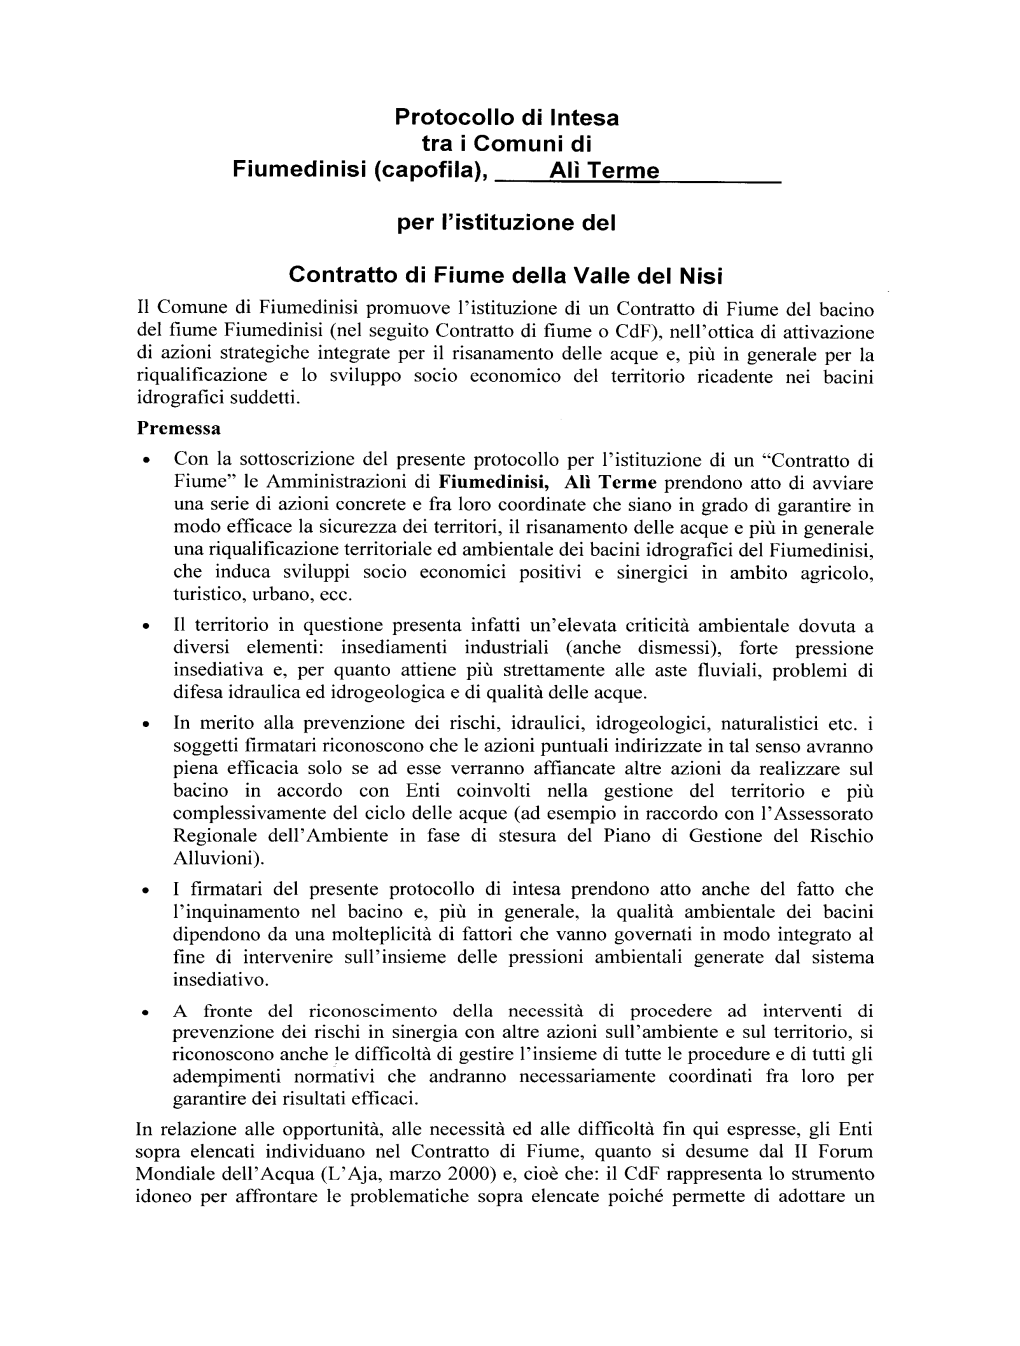 Protocollo Di Intesa Tra I Comuni Di Fiumedinisi (Capofila), Ali Terme Per L'istituzione Del Contratto Di Fiume Della Valle